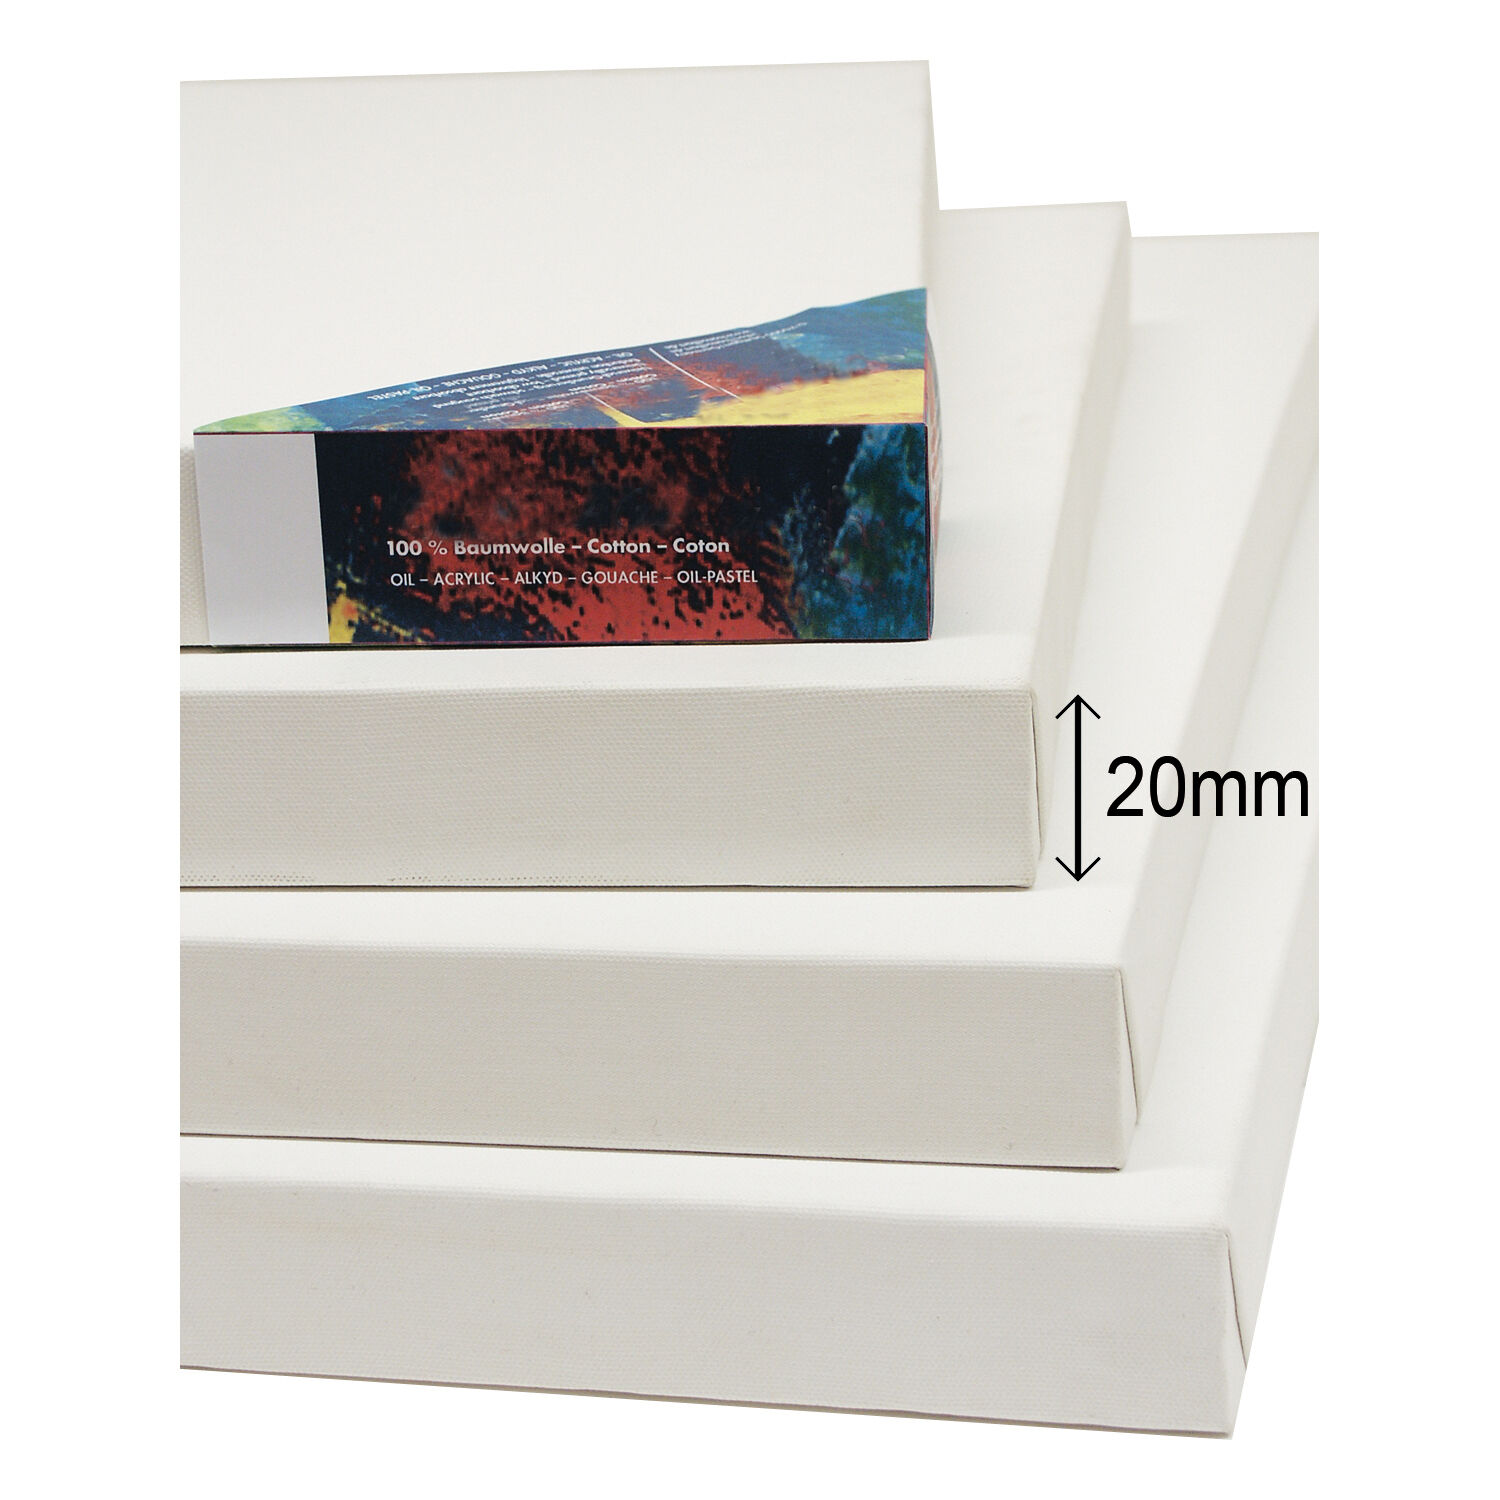 NEU Cotton 400 Premium-Keilrahmen Professionell 20mm Leistenstärke, 20 x 30 cm - 2 Stück